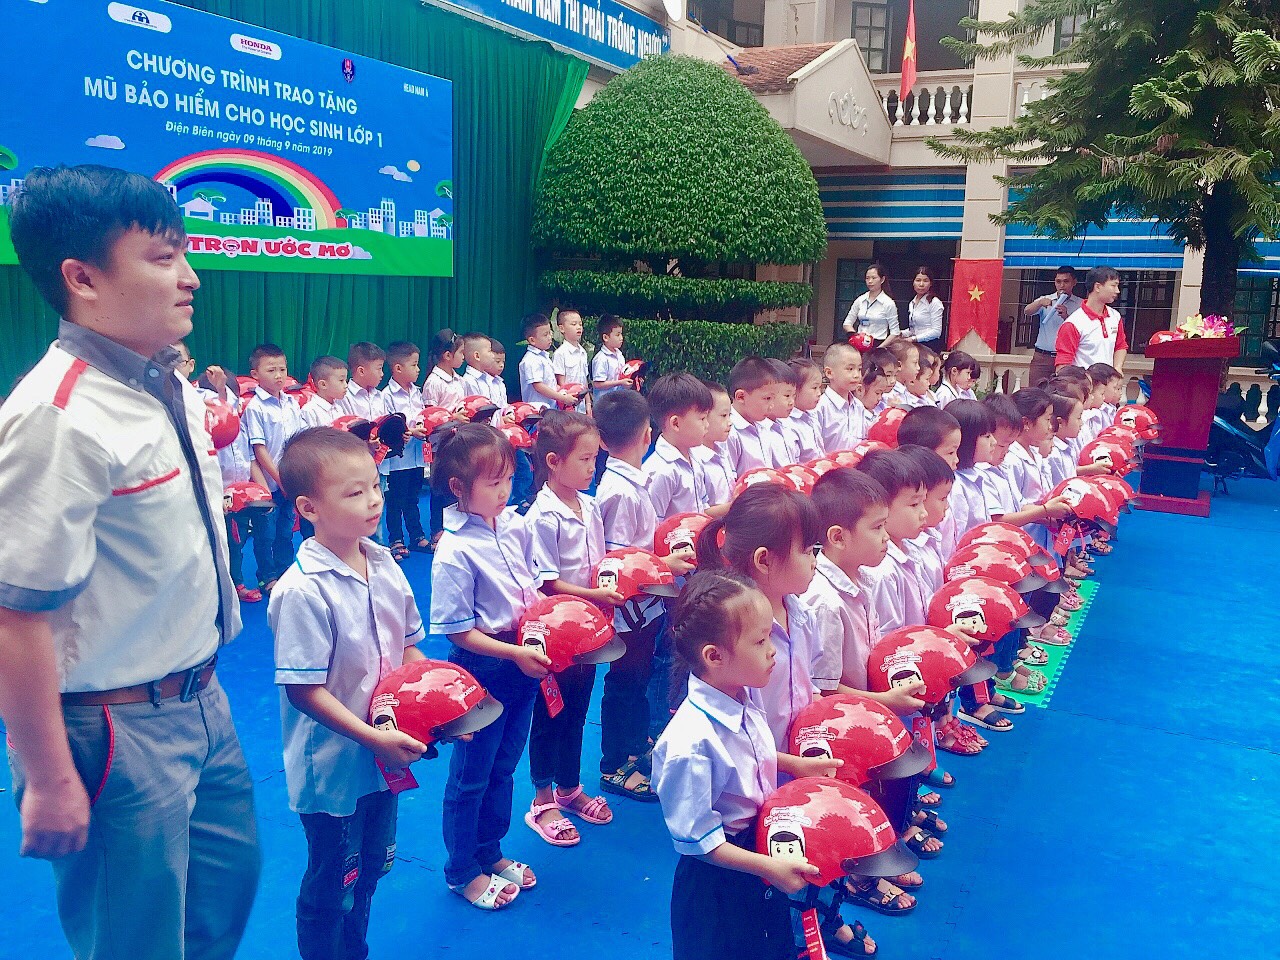 Trường Tiểu học Nam Thanh thành phố Điện Biên phủ phối hợp với Công ty Trách nhiệm hữu hạn Nam Á tổ chức trao mũ bảo hiểm cho 156 em học sinh khối lớp 1